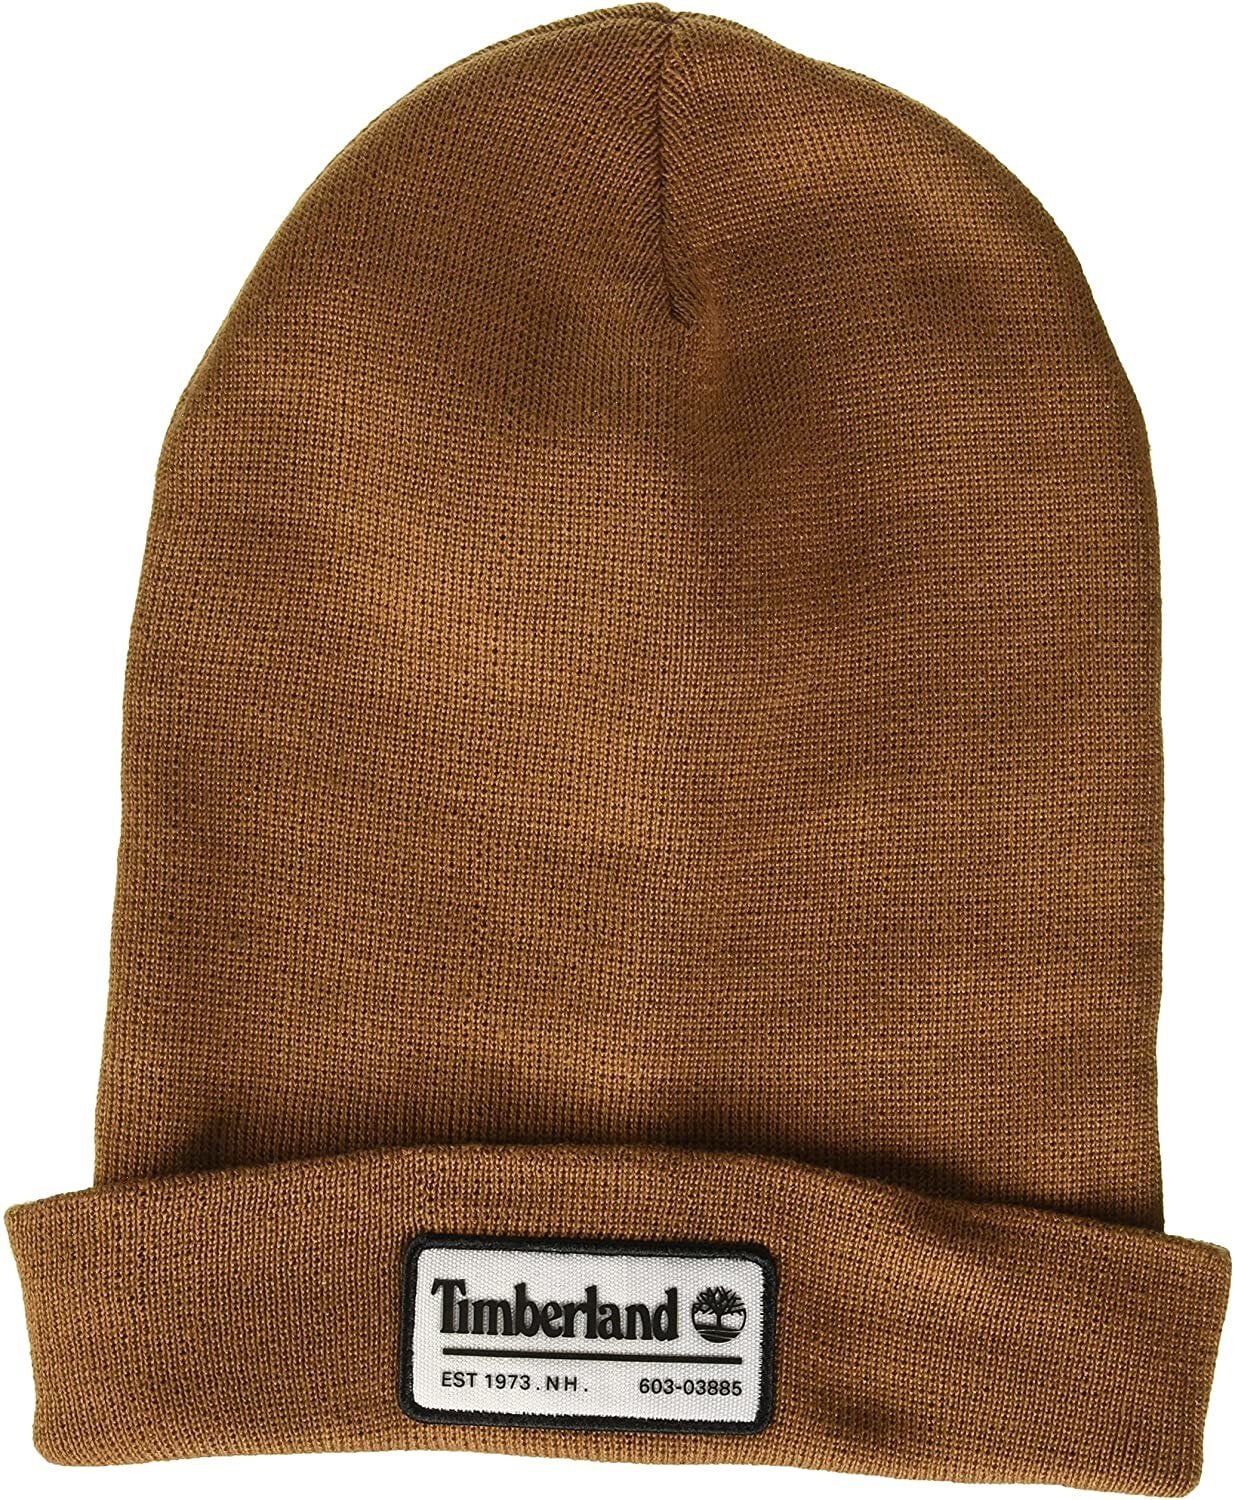 Шапка коричневая мужская. Шапка тимберленд мужская. Шапка Timberland мужская. Коричневая шапка.